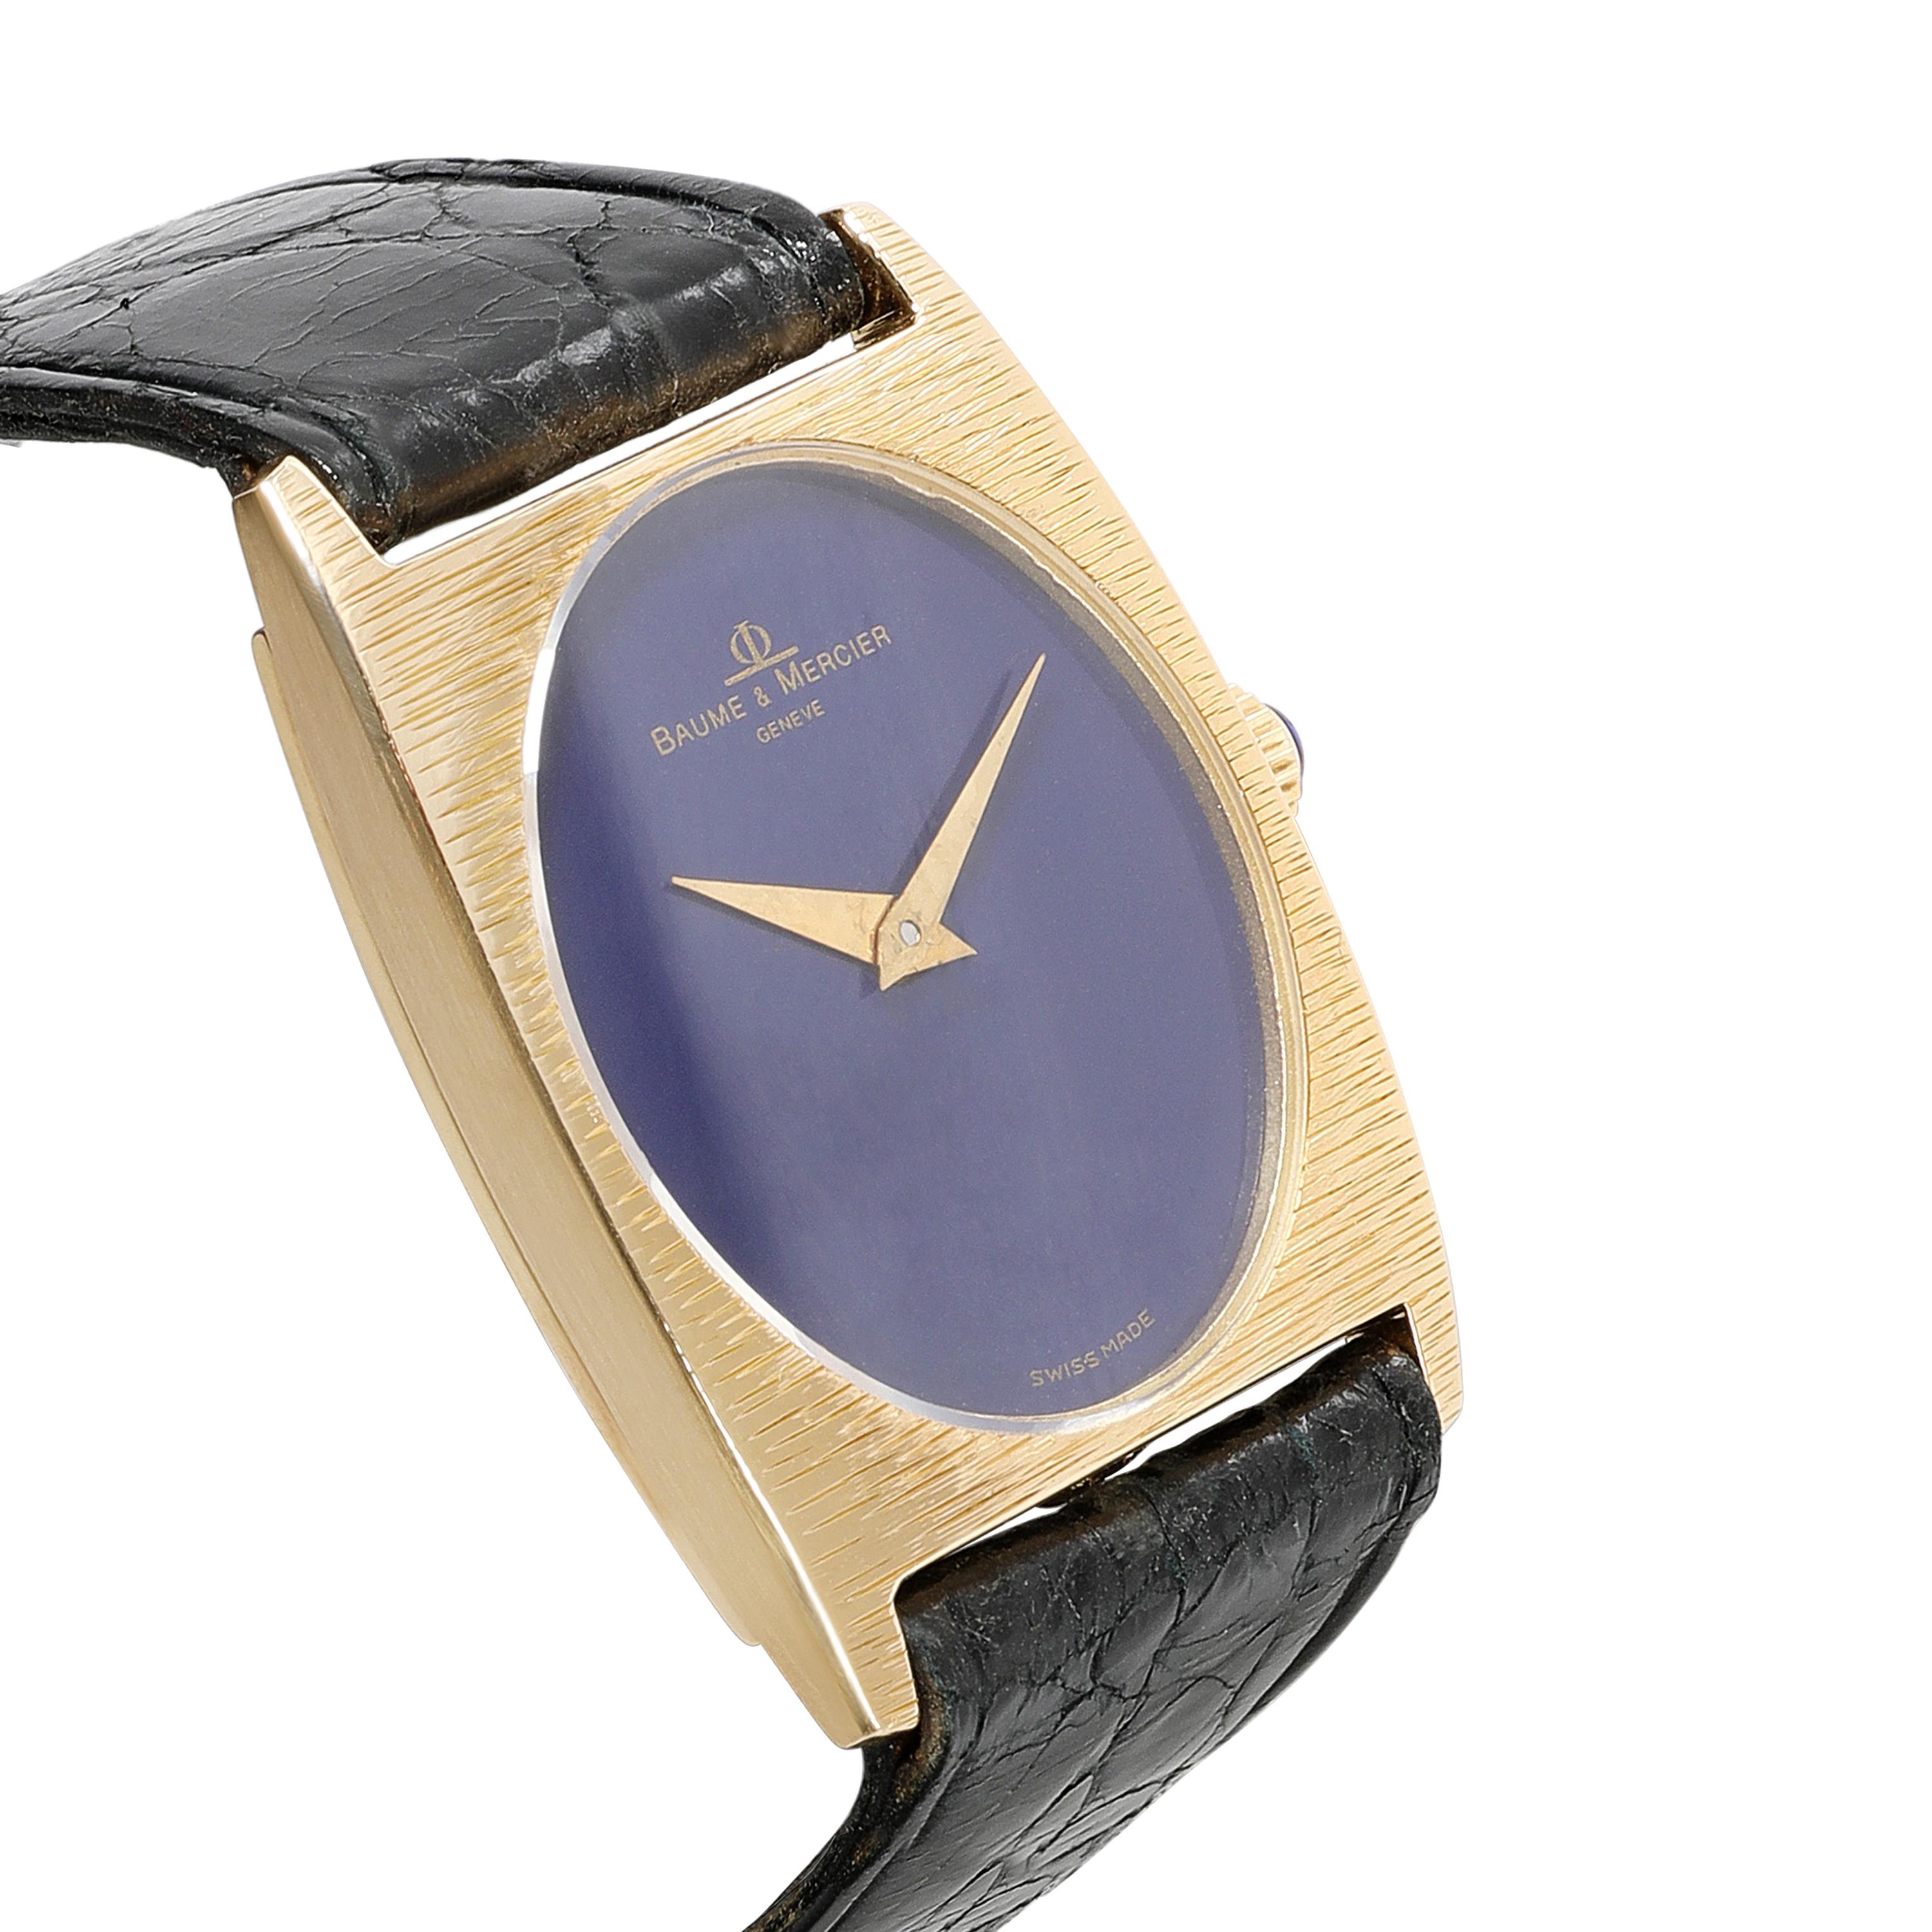 Baume & Mercier Classique 37073 Women's Watch in 18kt Yellow Gold 1